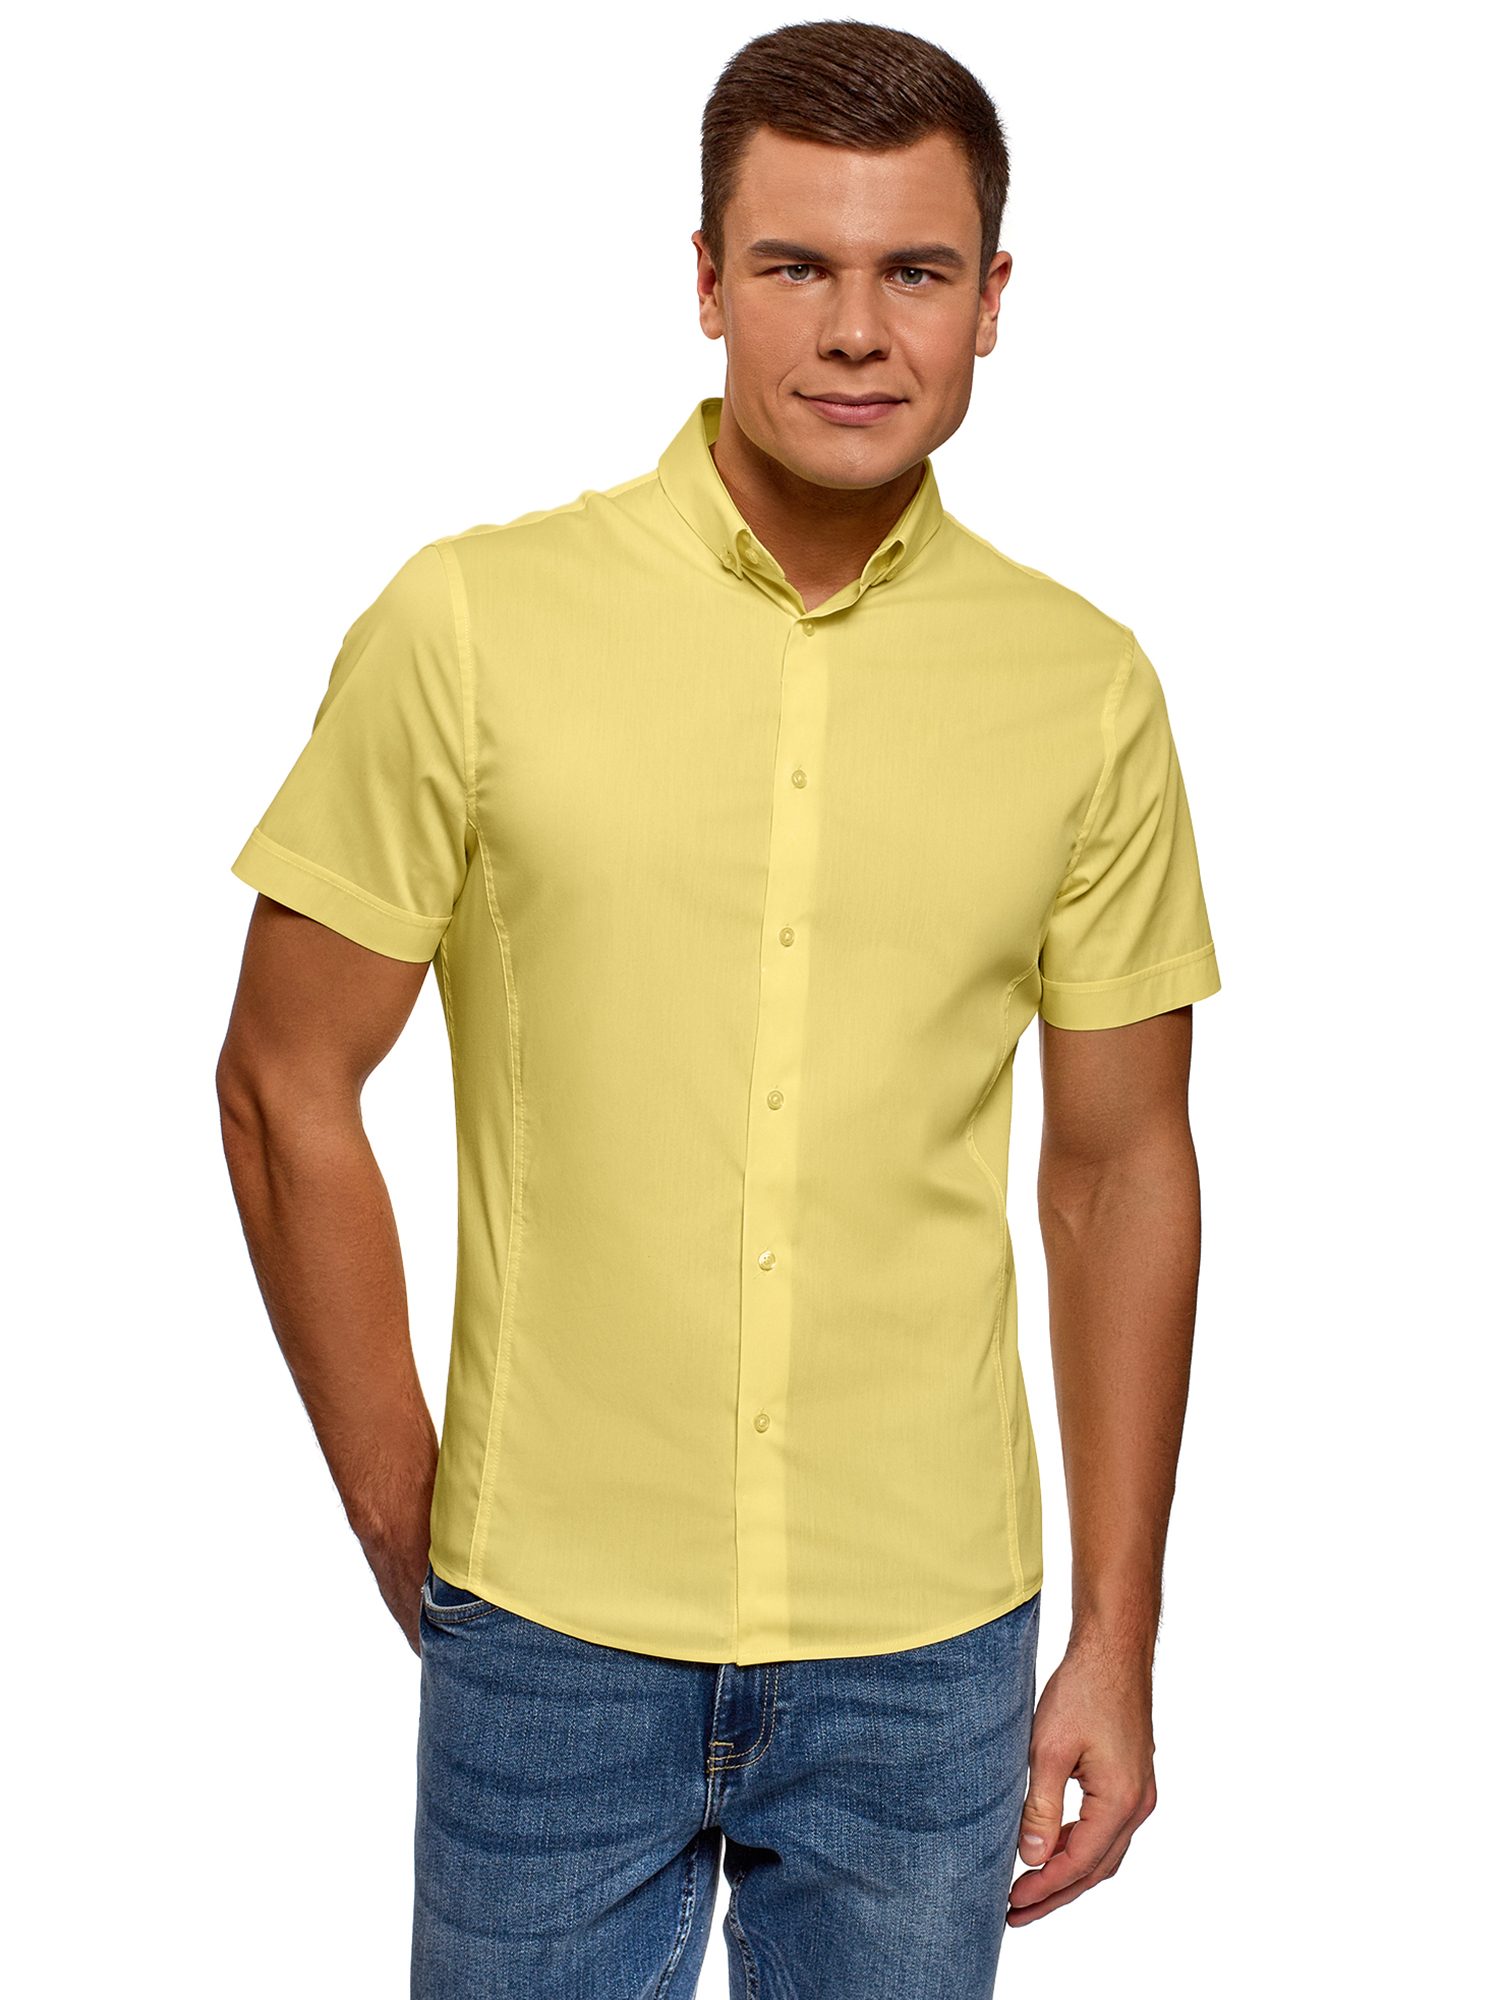 Желтая рубашка мужская с чем носить фото